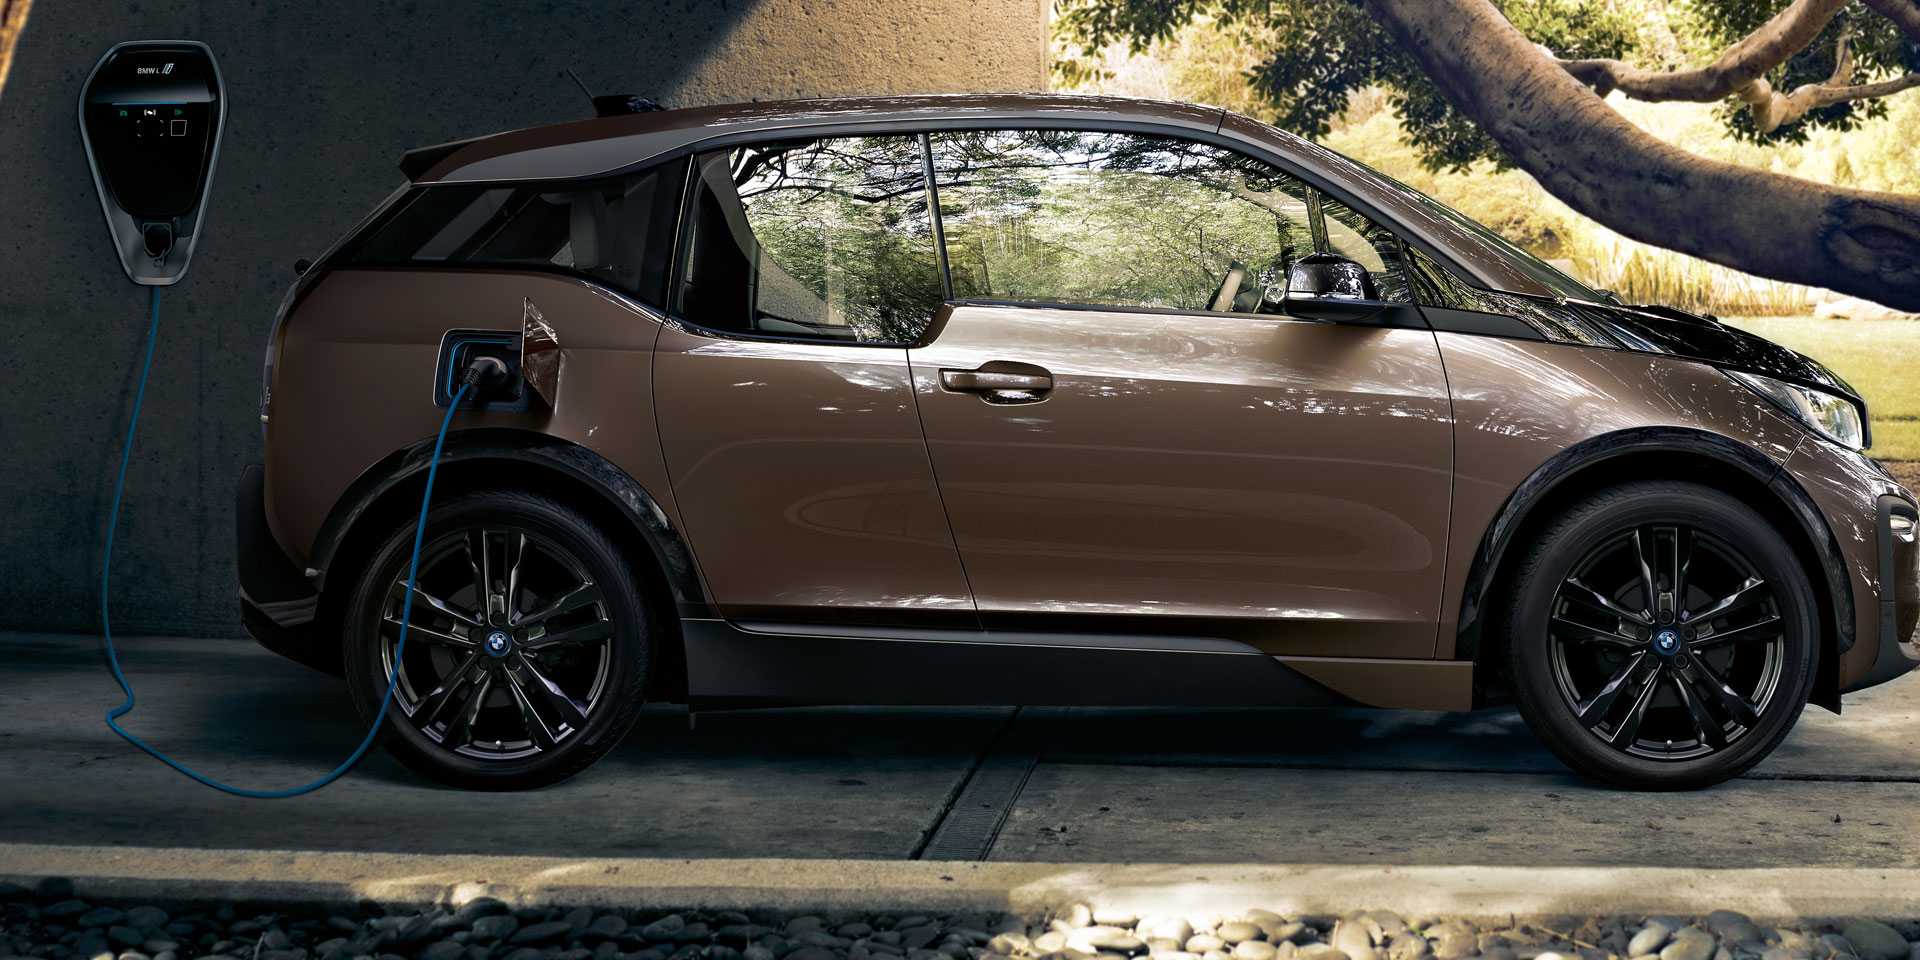 Модификации BMW i3 рестайлинг основные отличия модификации i3s от базовой версии экстерьер электрокара интерьер технические характеристики режимы управления и зарядка батареи комплектация цена отзывы автовладельцев